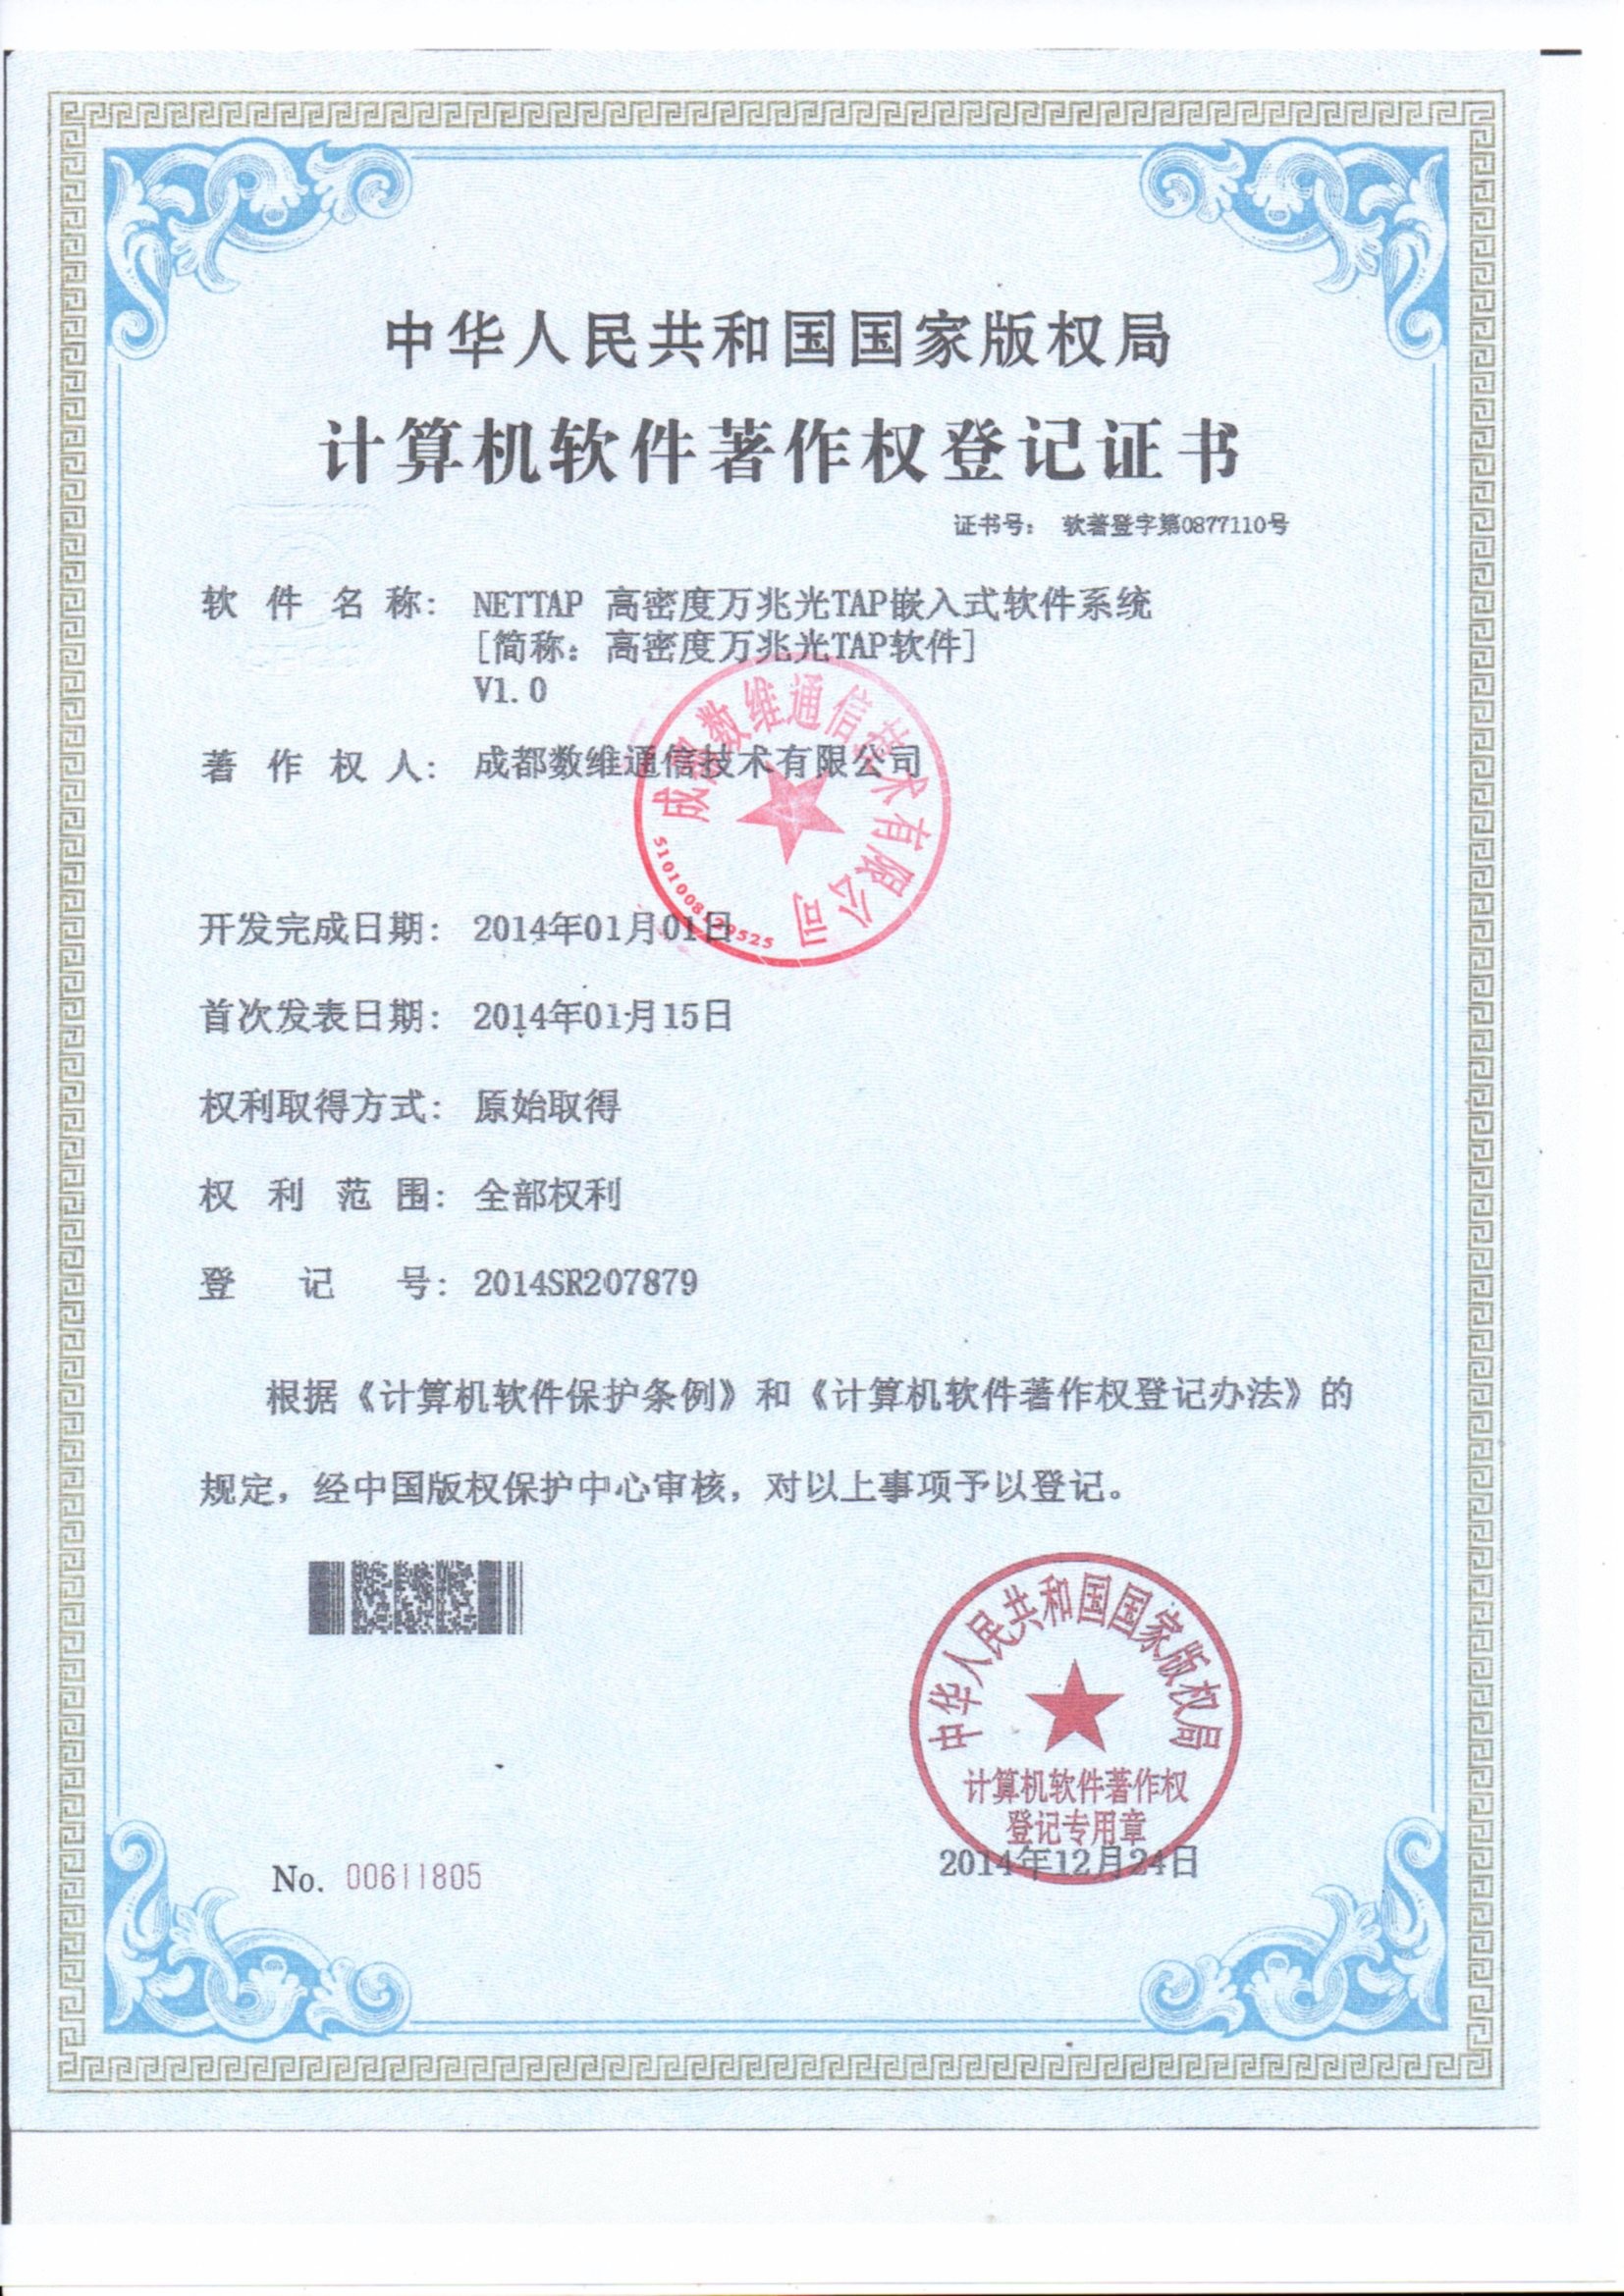 الصين Chengdu Shuwei Communication Technology Co., Ltd. الشهادات